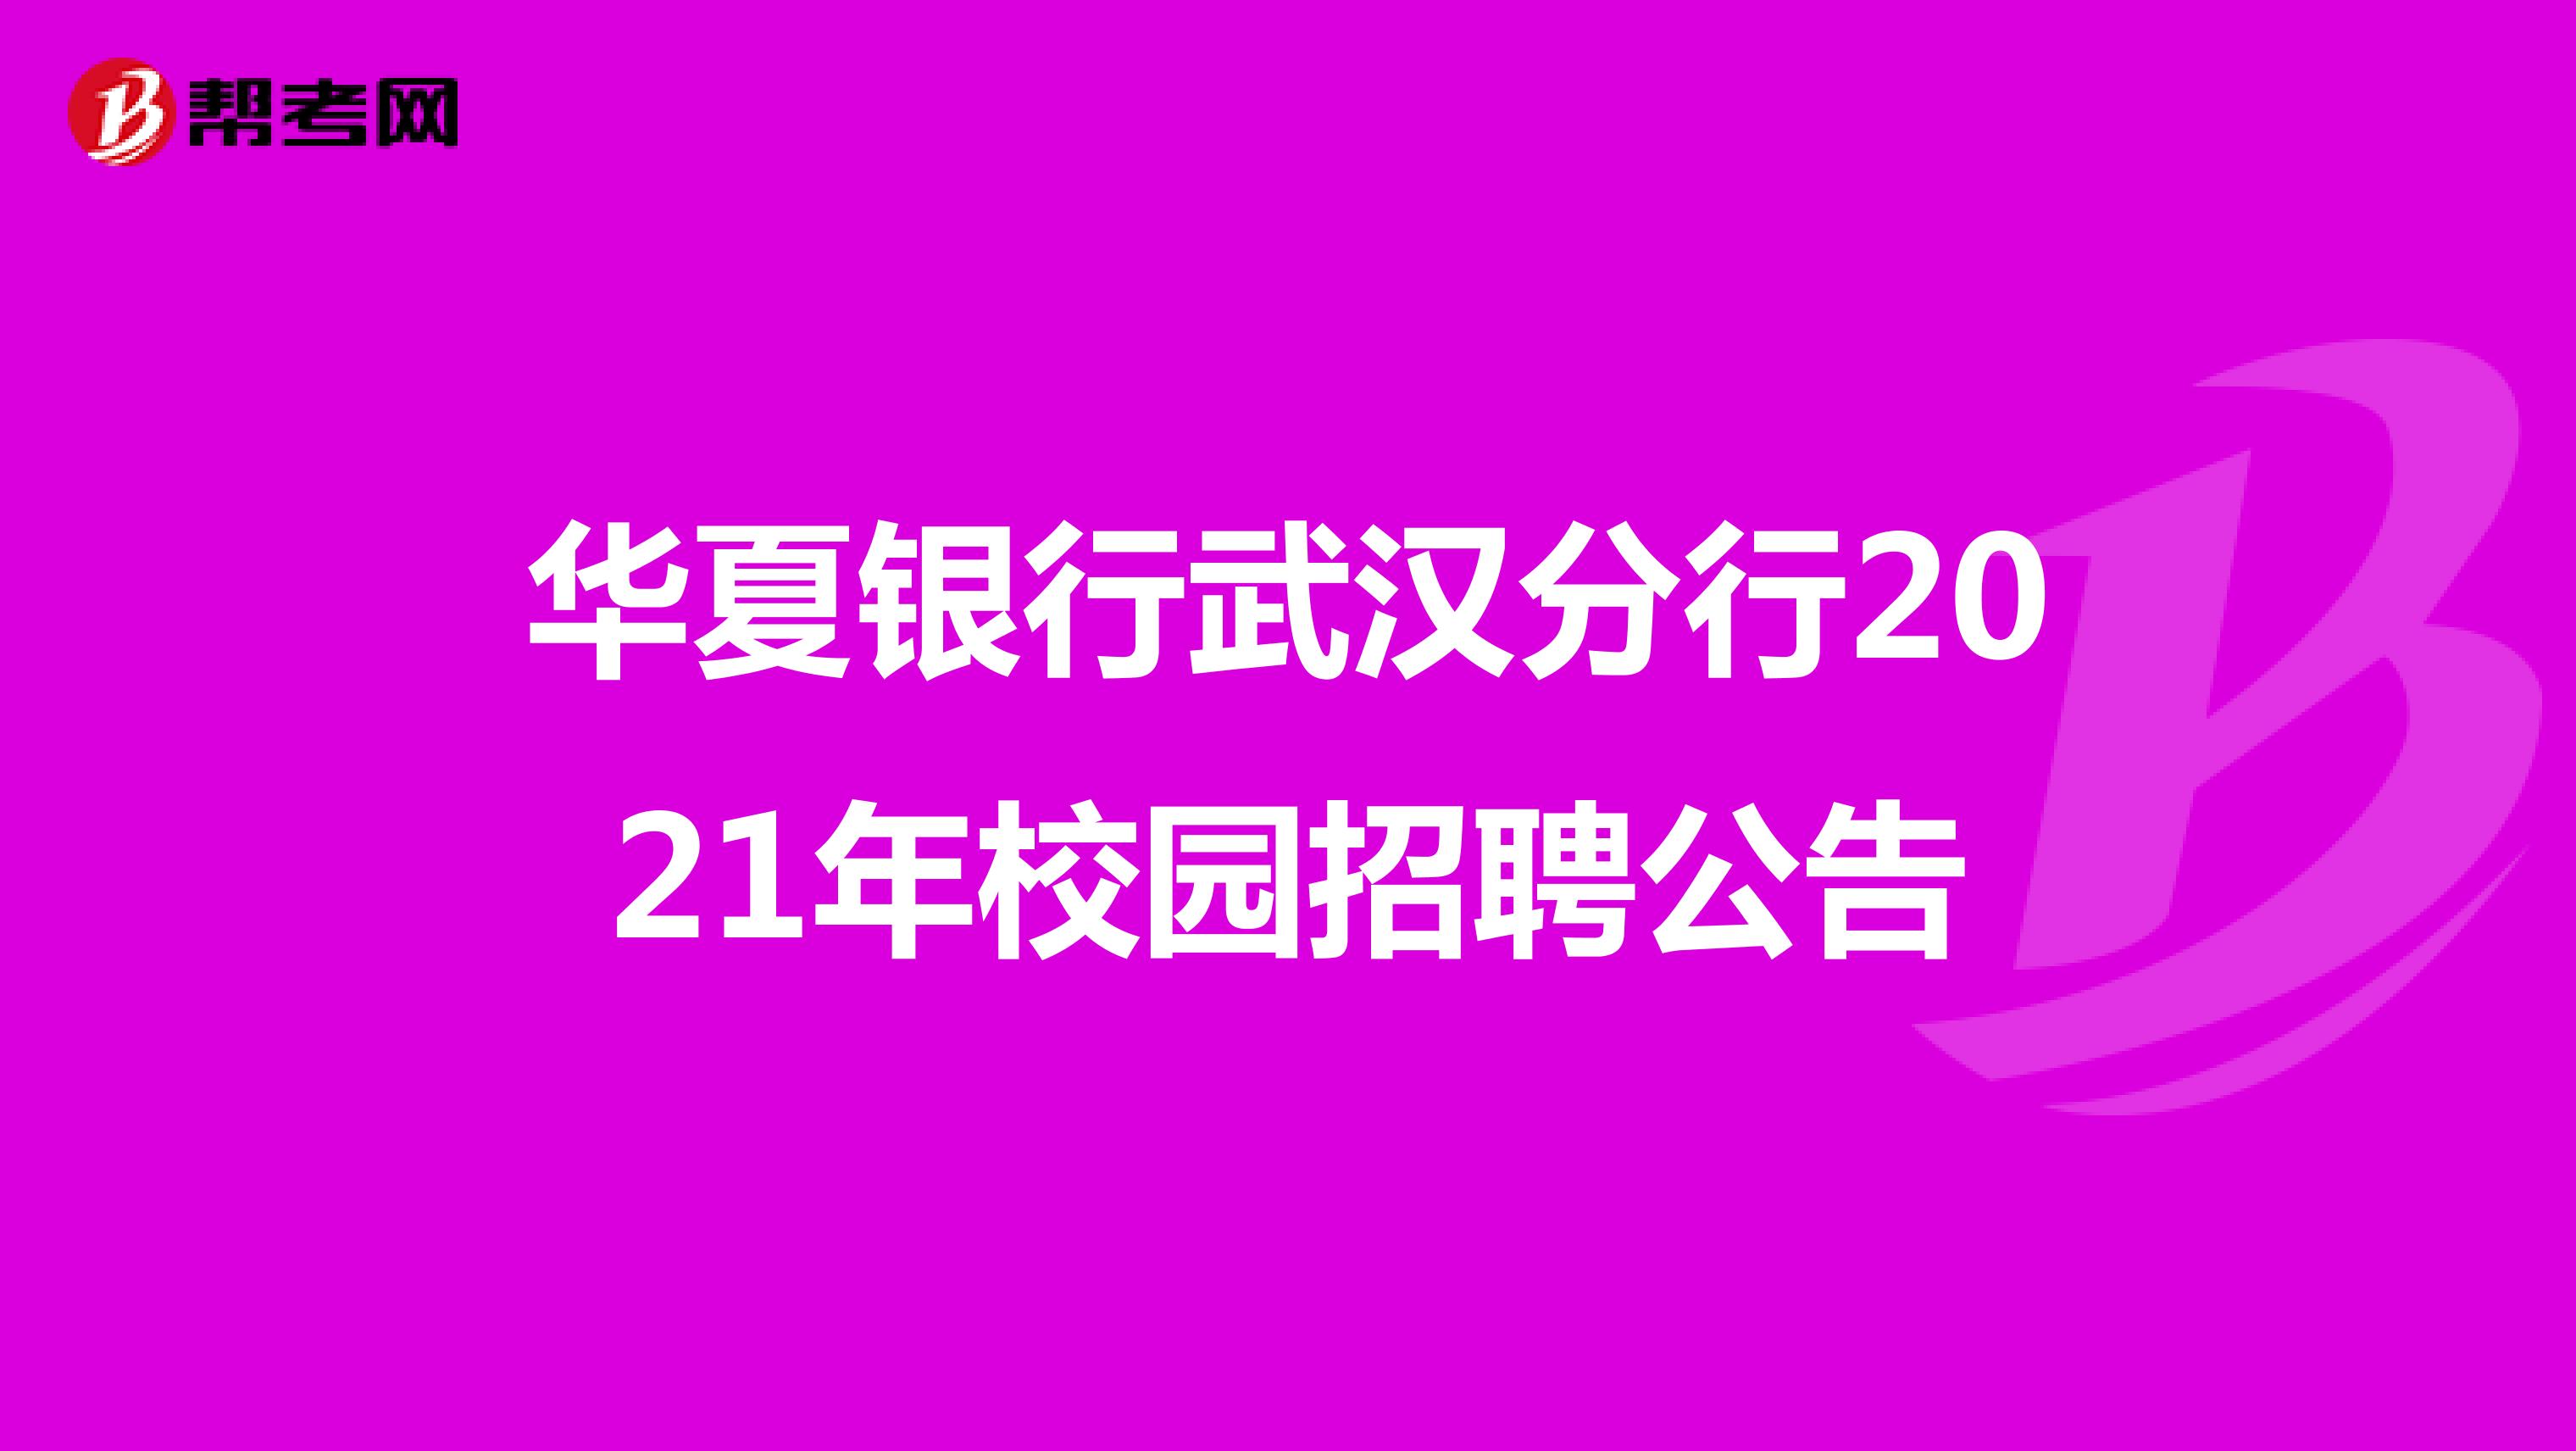 华夏银行武汉分行2021年校园招聘公告